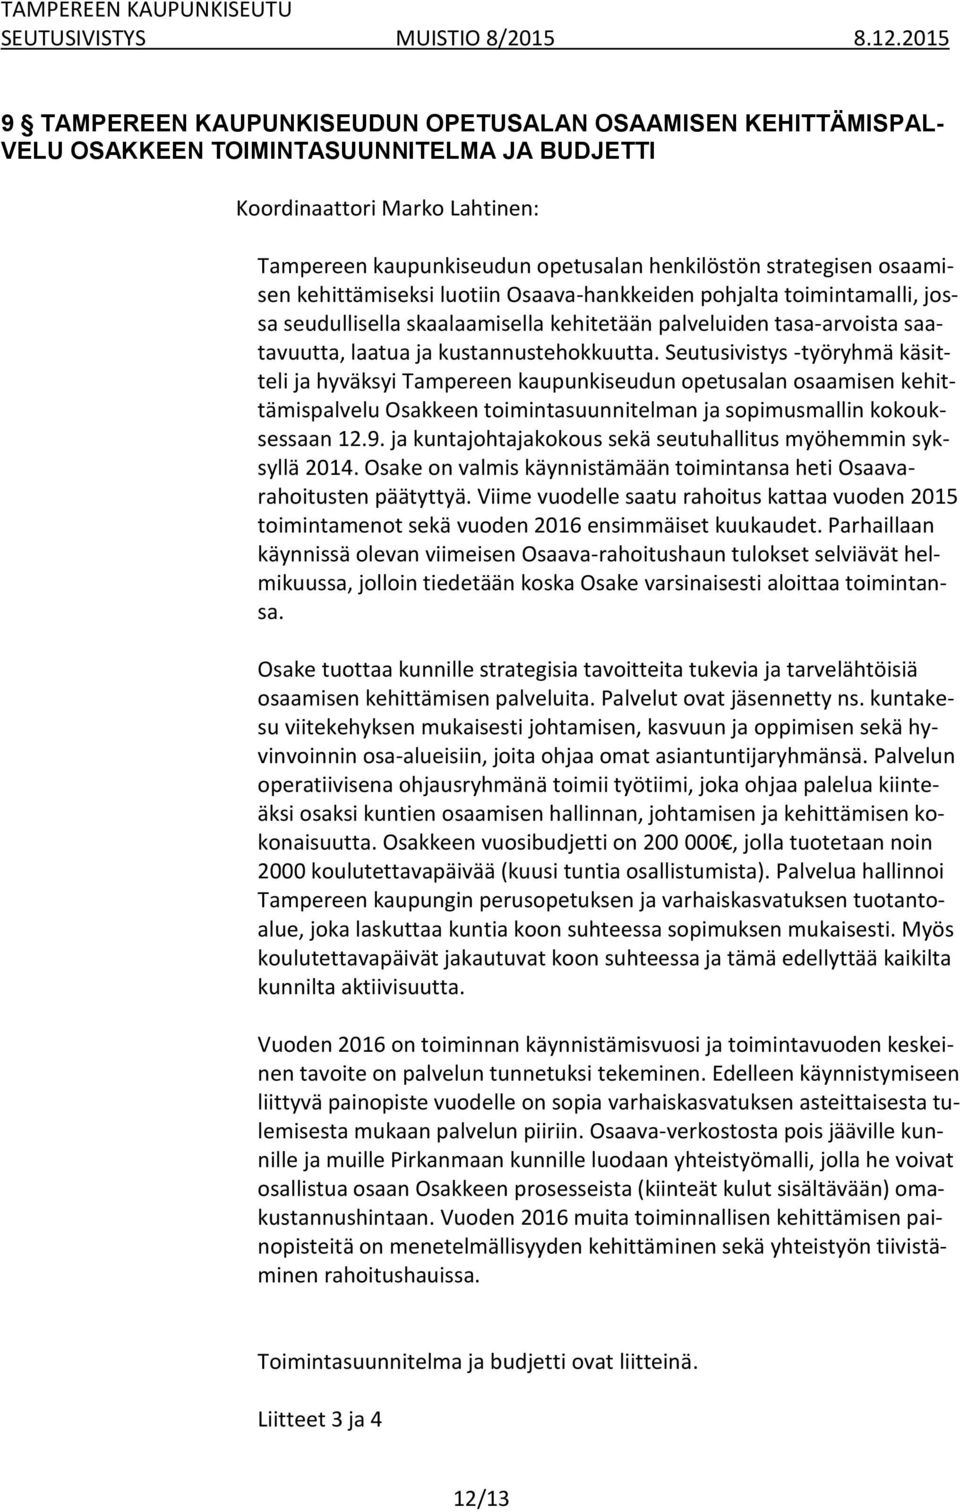 Seutusivistys -työryhmä käsitteli ja hyväksyi Tampereen kaupunkiseudun opetusalan osaamisen kehittämispalvelu Osakkeen toimintasuunnitelman ja sopimusmallin kokouksessaan 12.9.